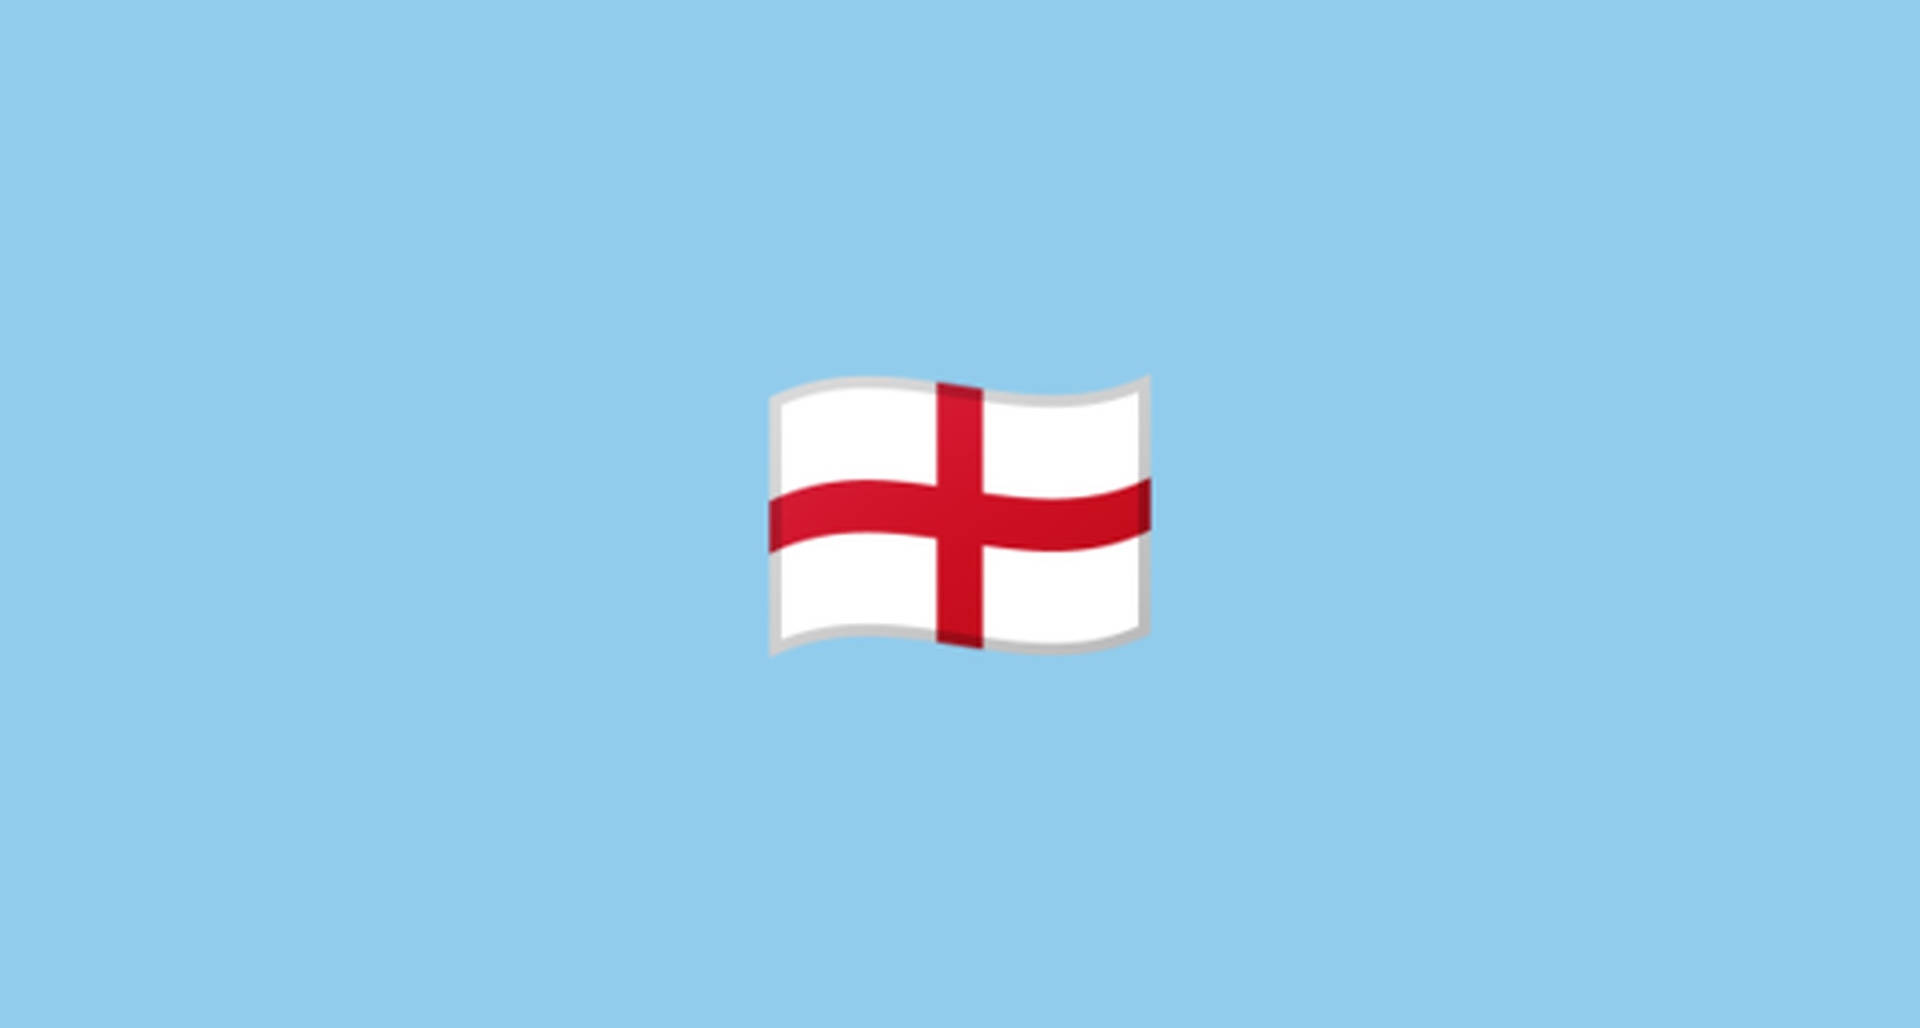 british flag night emoji